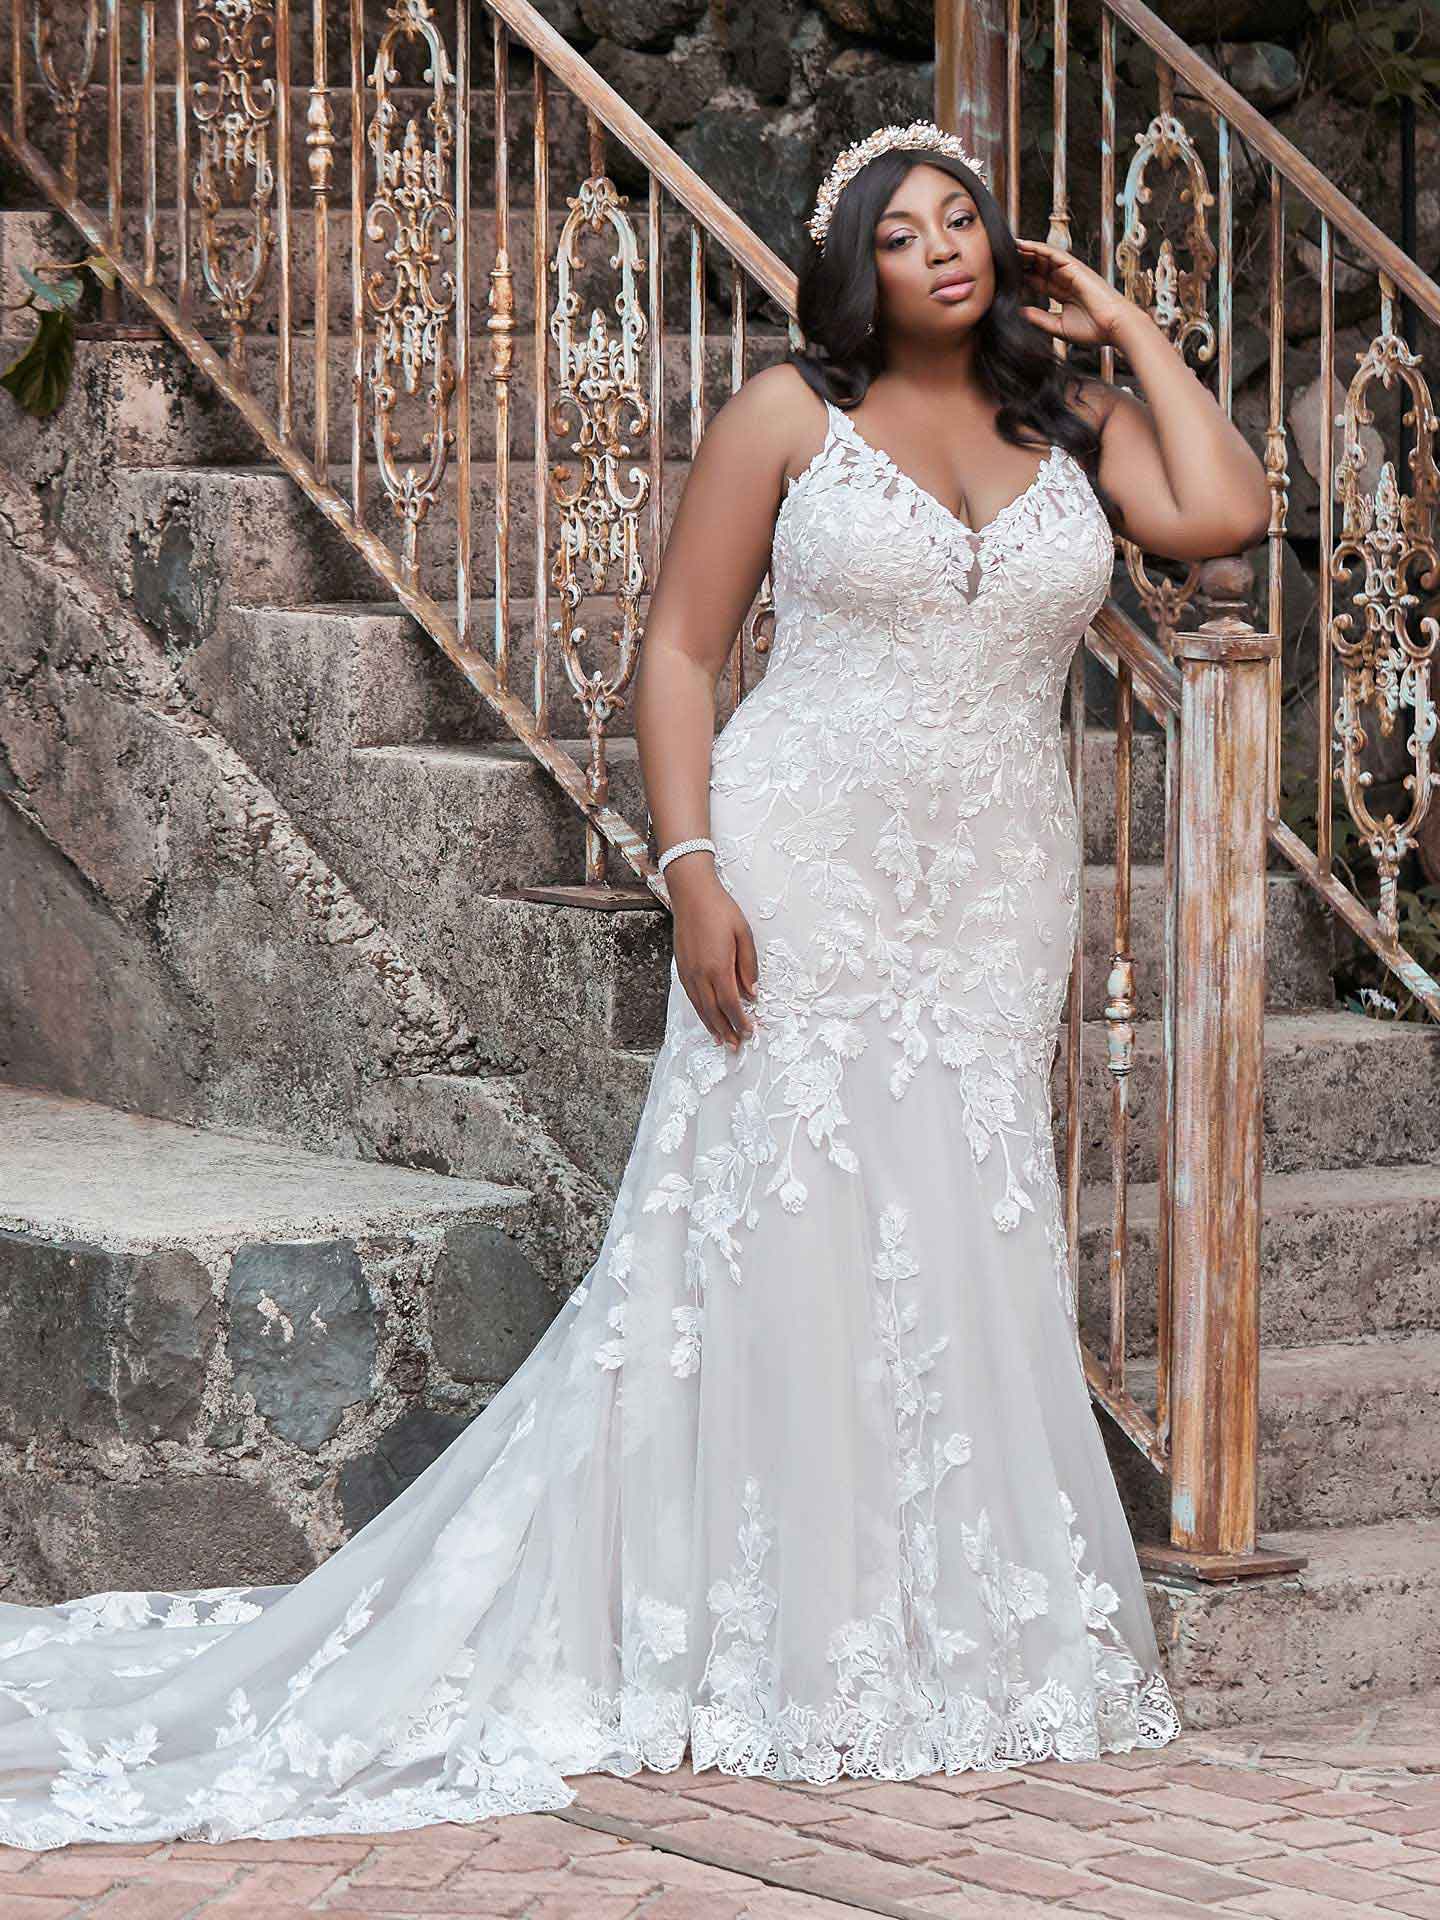 Hængsel Tag ud svar Plus Size Wedding Dresses - Northern VA | Elegance By Roya